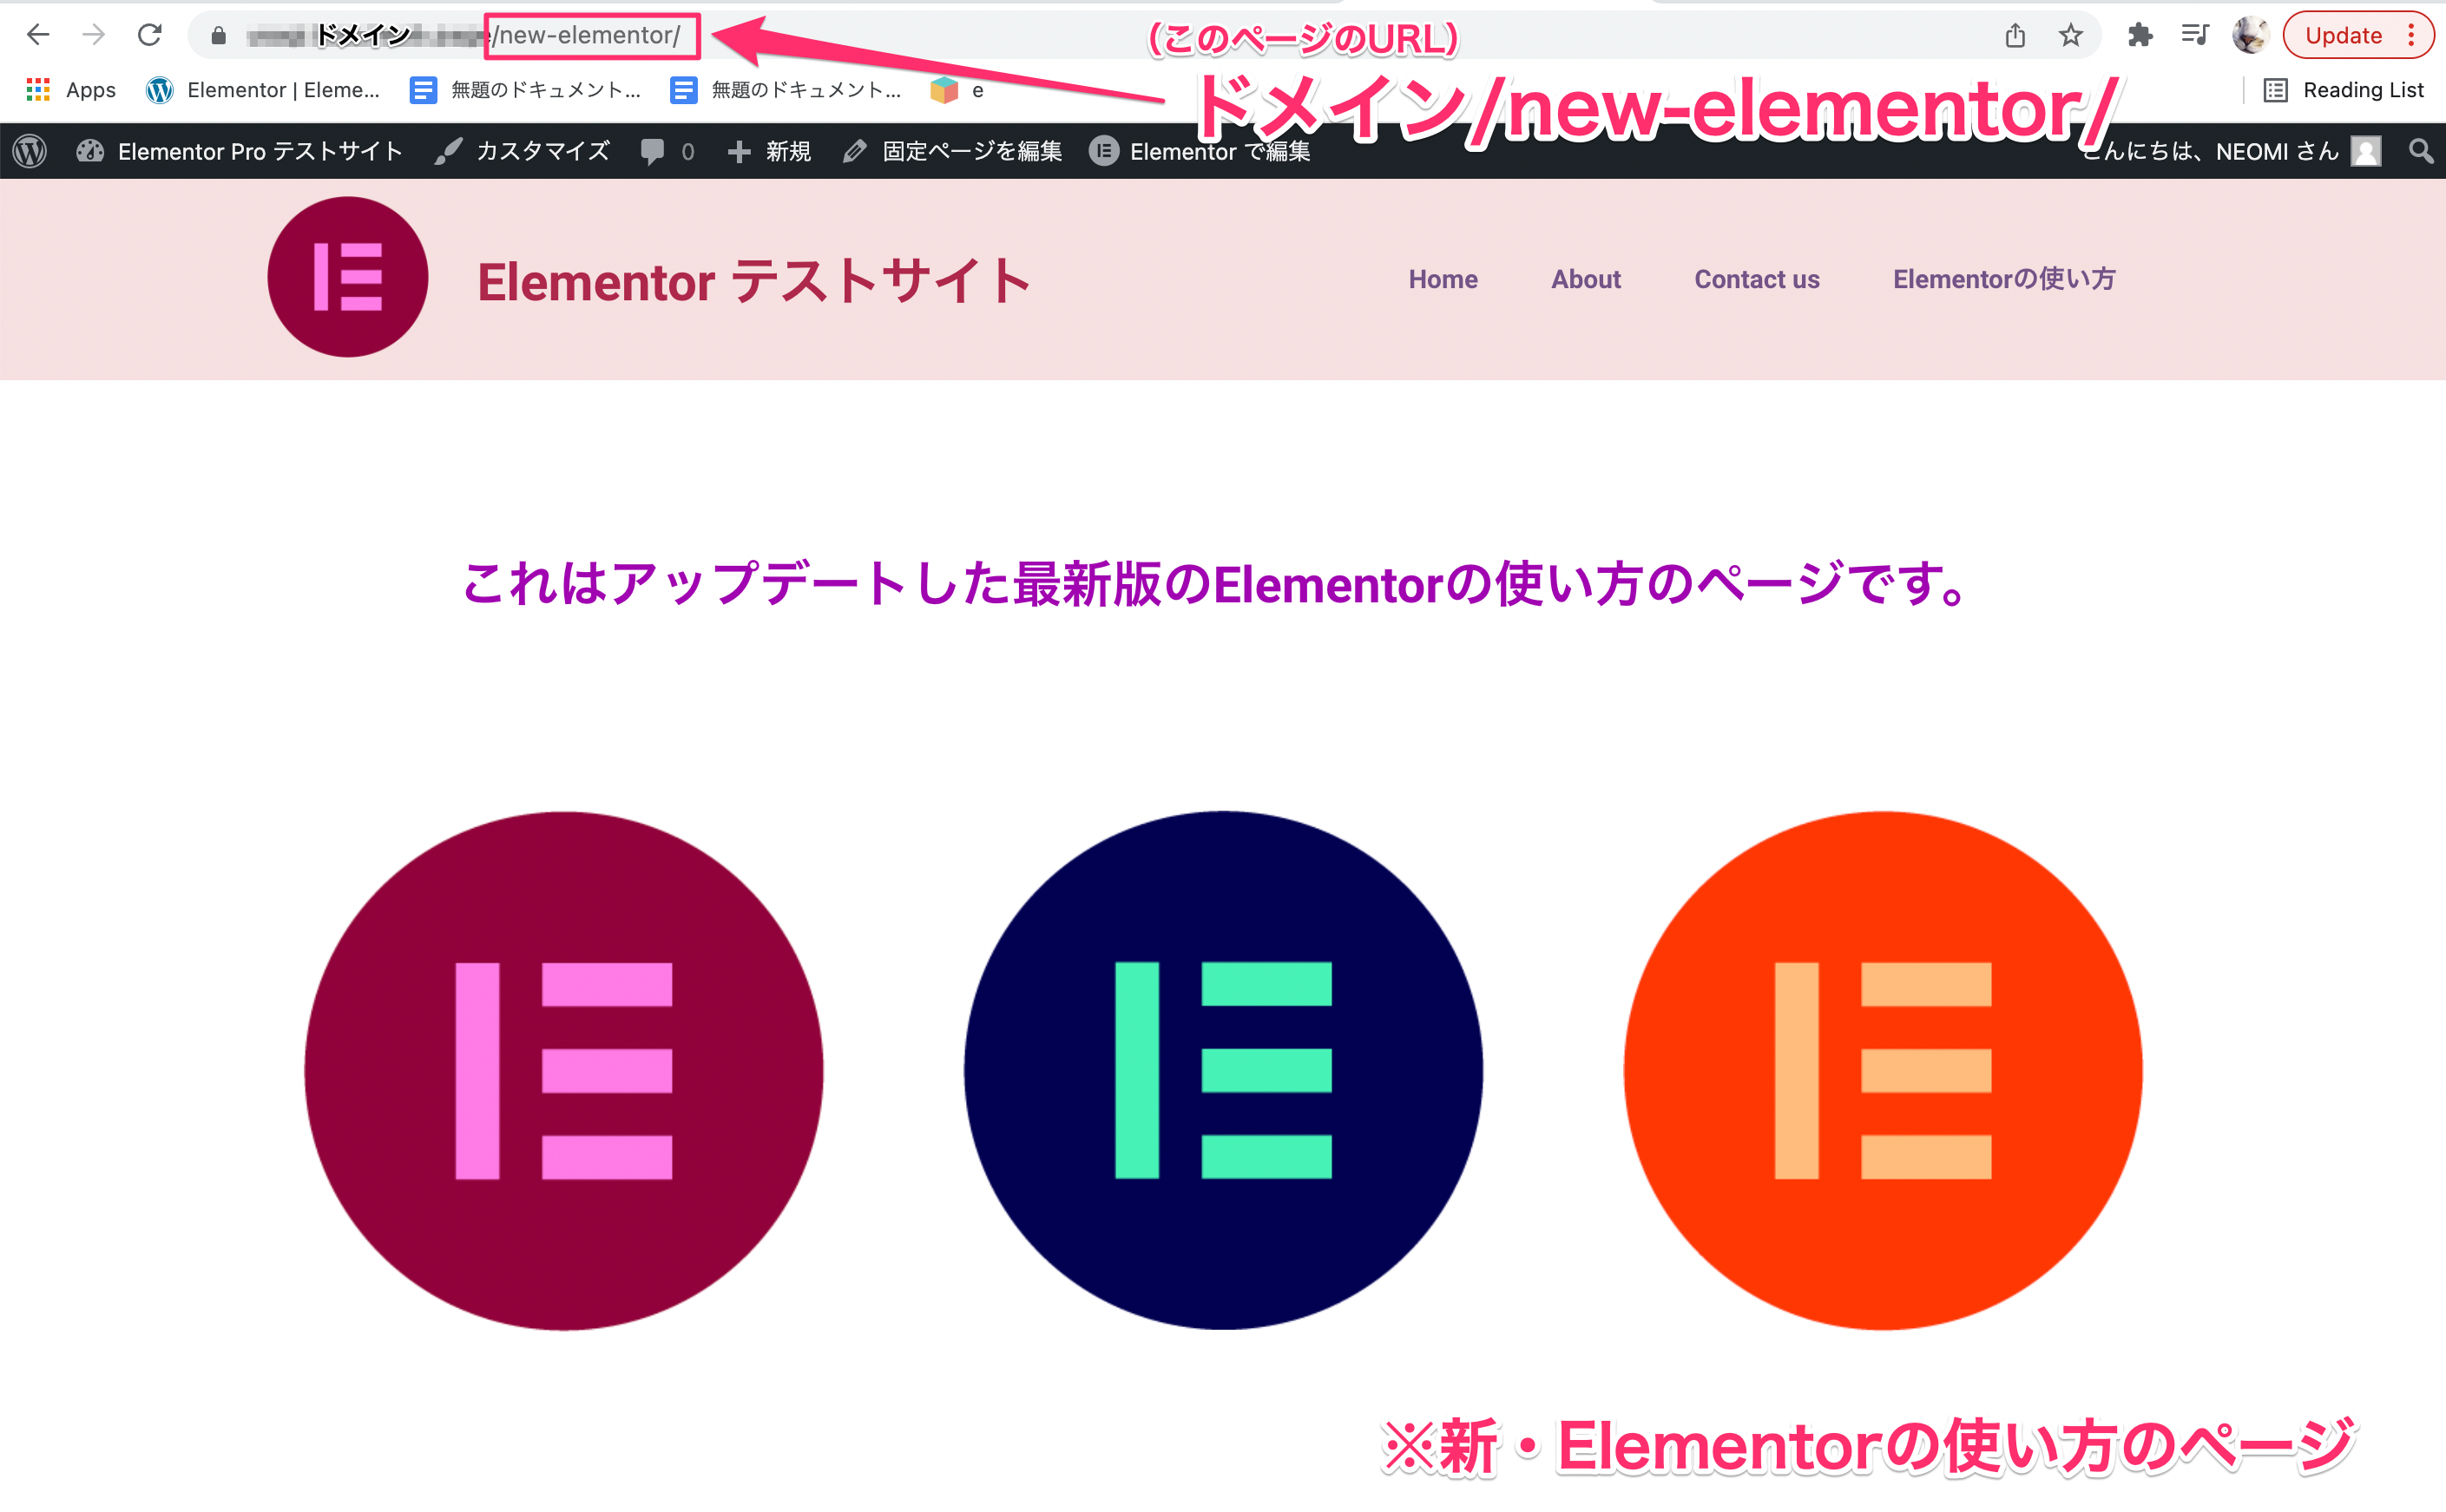 サンプルでリダイレクト先となる『新・Elementorの使い方』の固定ページの表示画面とページURL